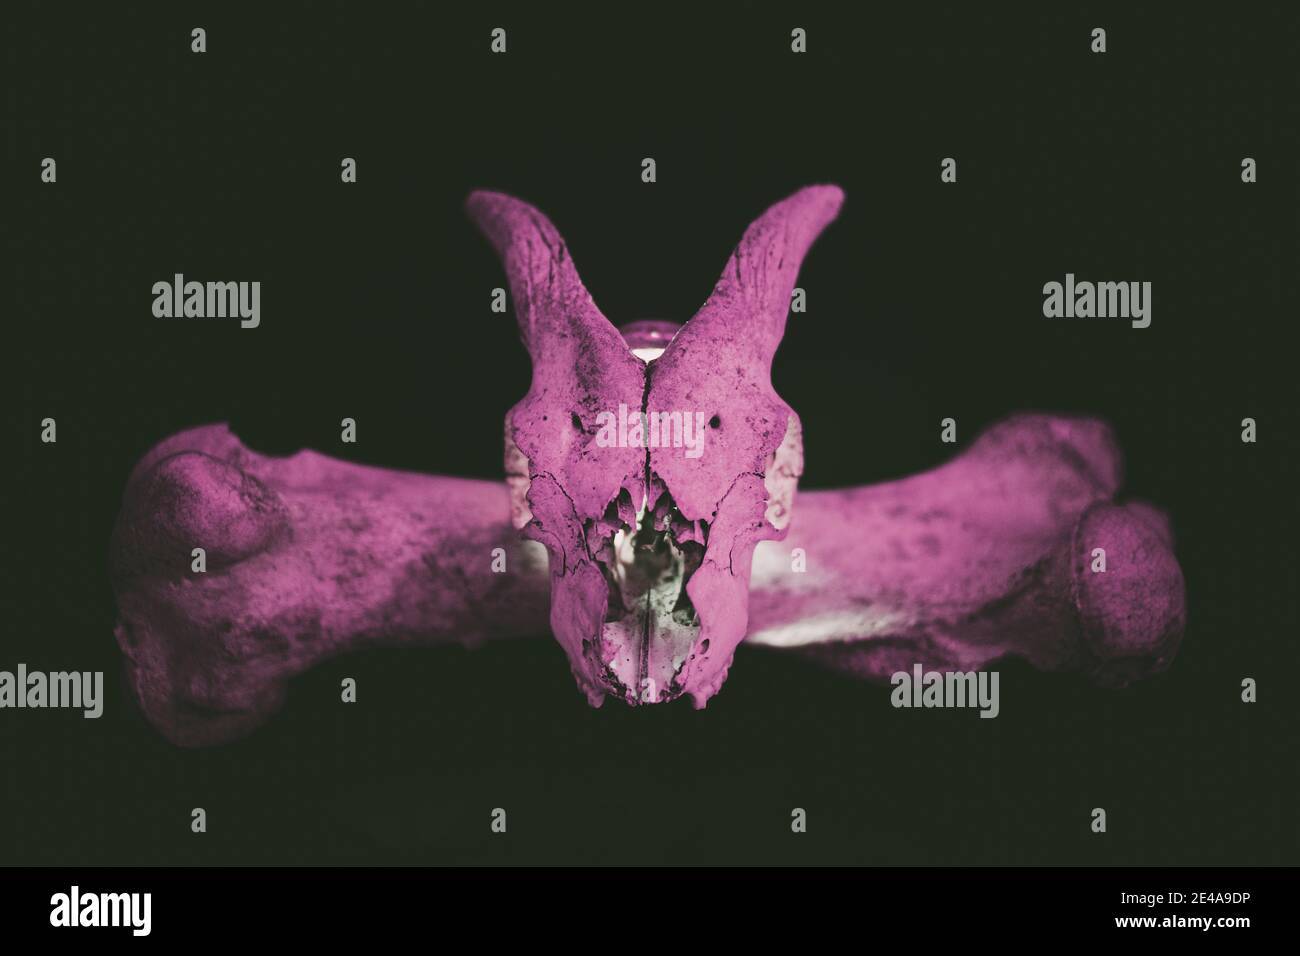 Cranio di capra con corna sull'osso dell'orso con luce viola su sfondo scuro. Foto Stock